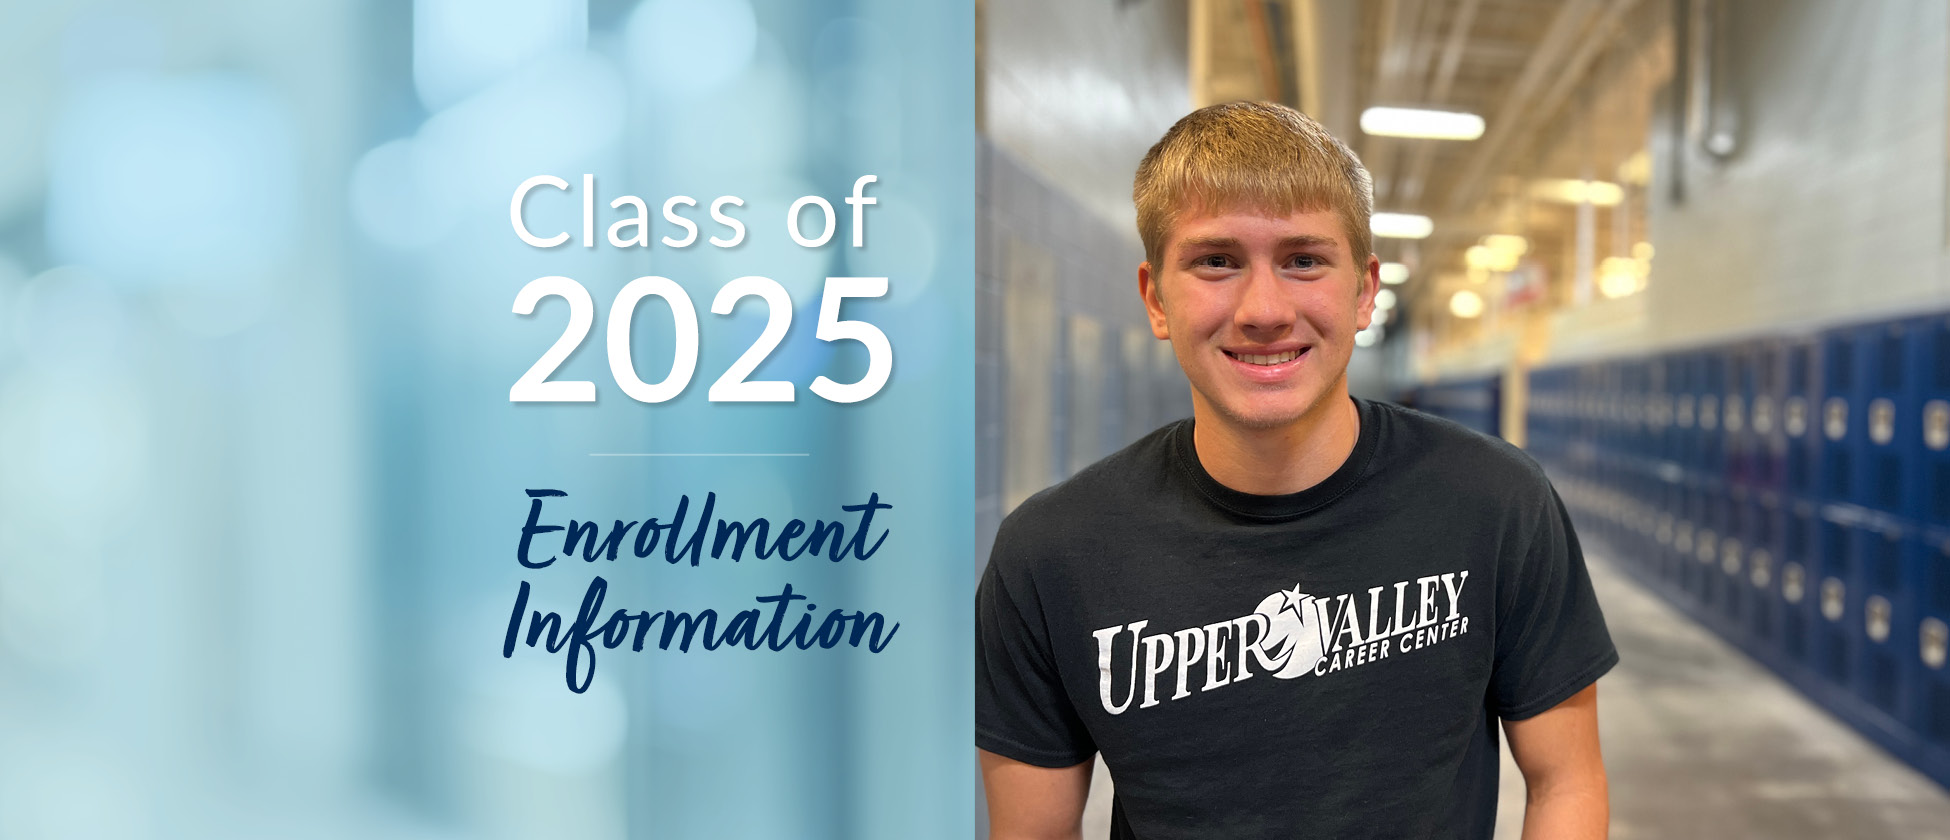 Class of 2025 Enrollment